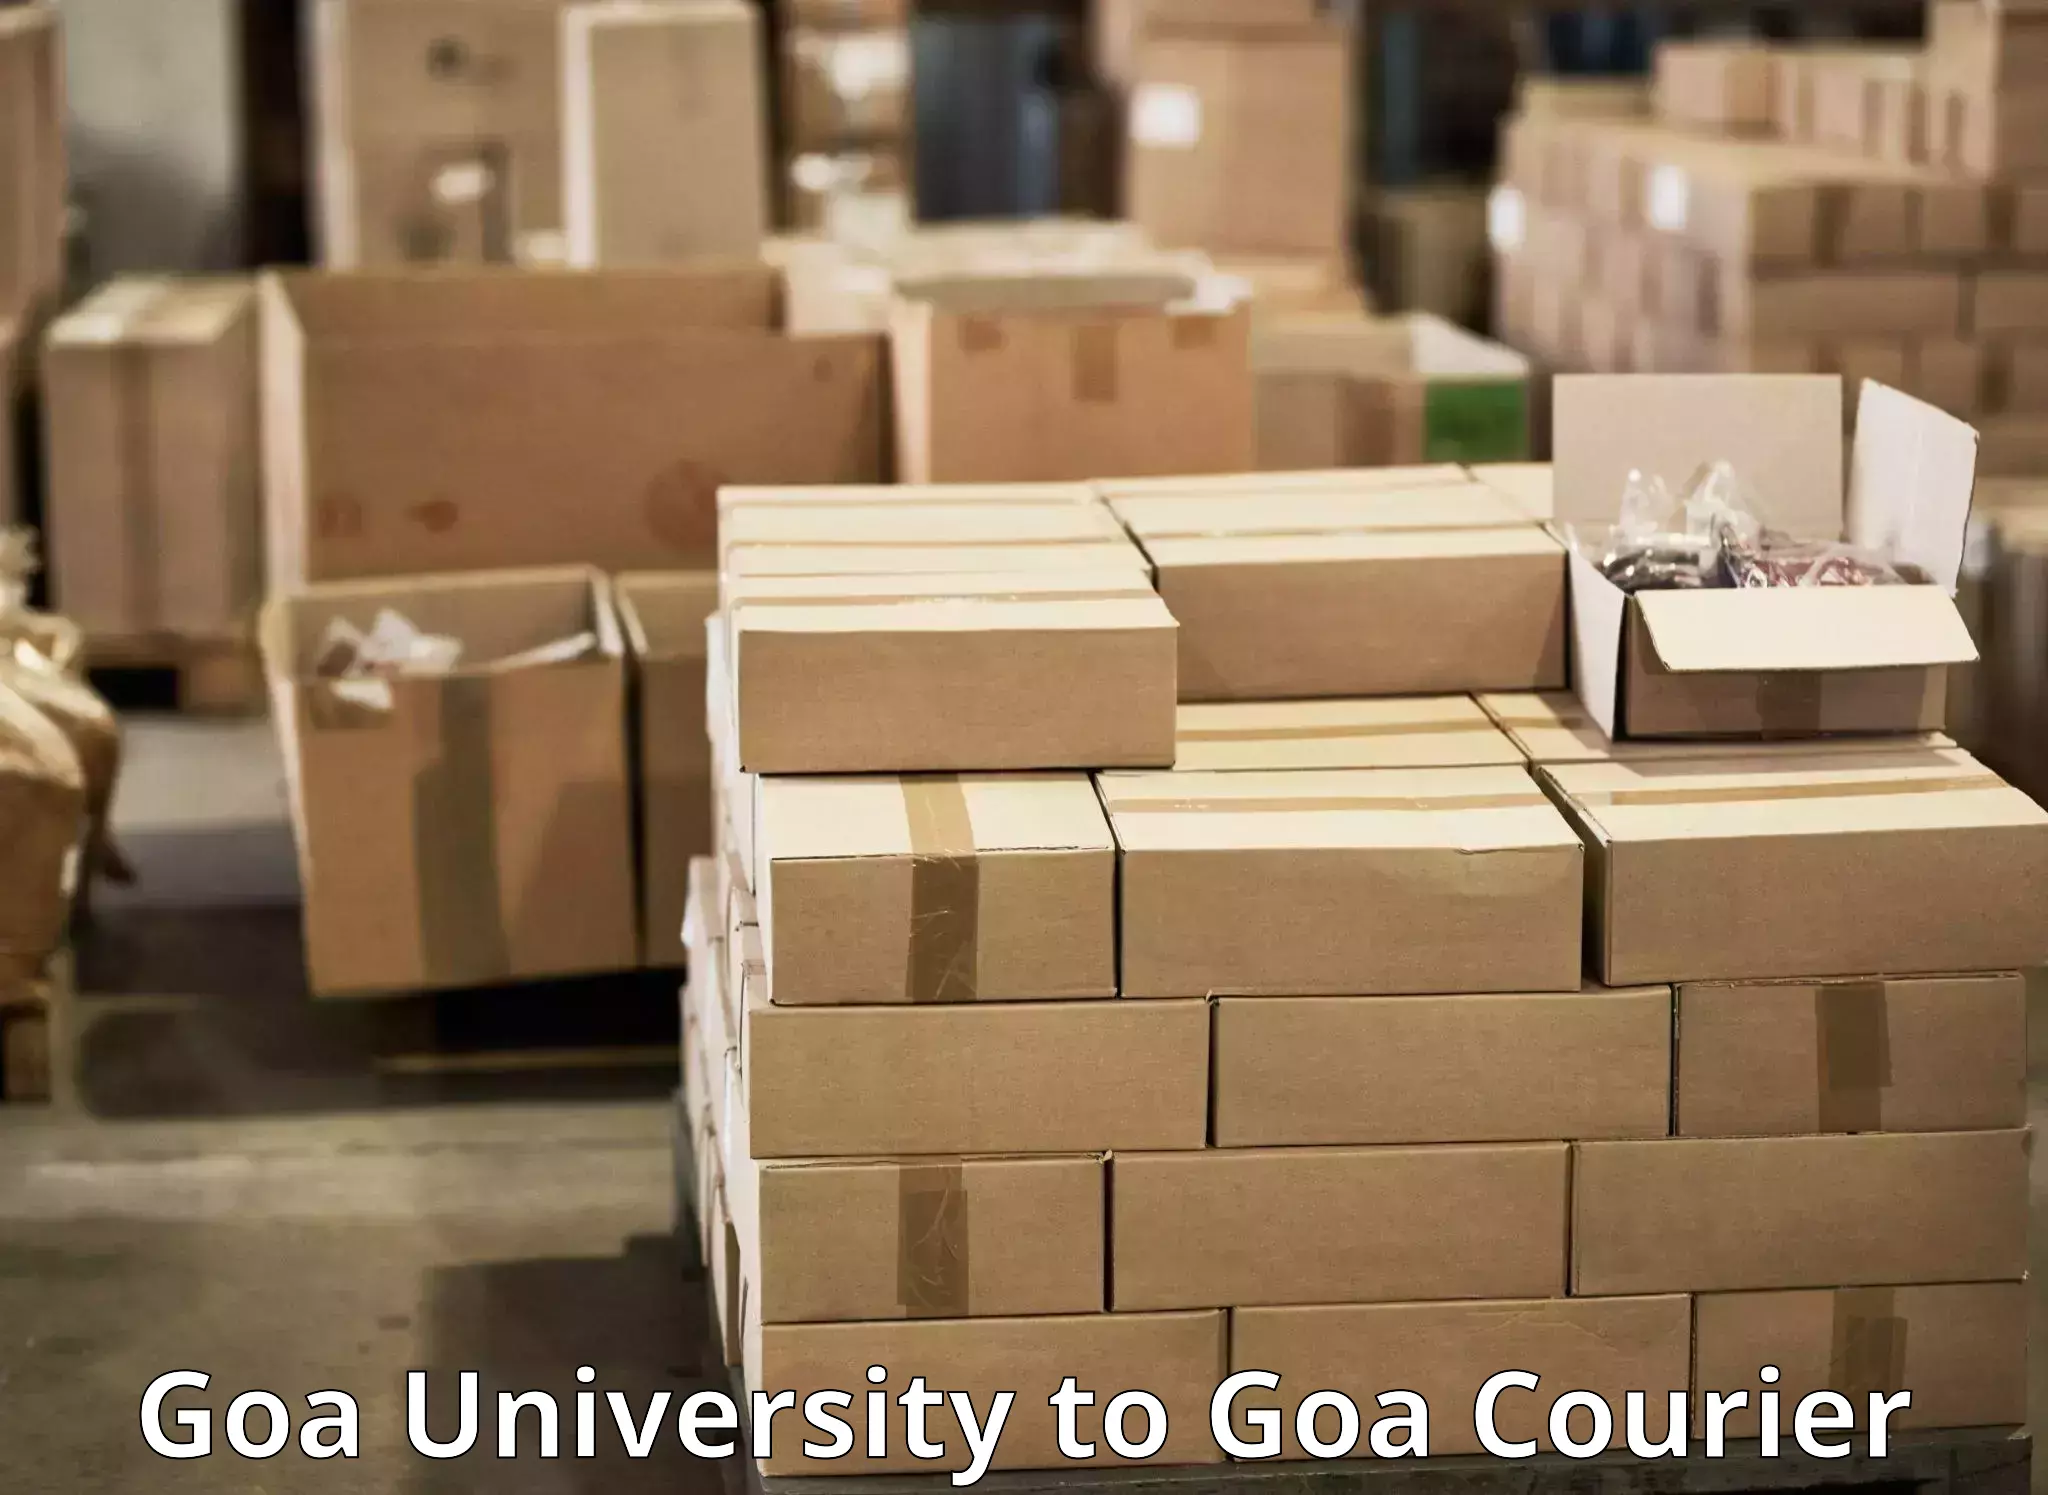 Courier service comparison Goa University to Panaji